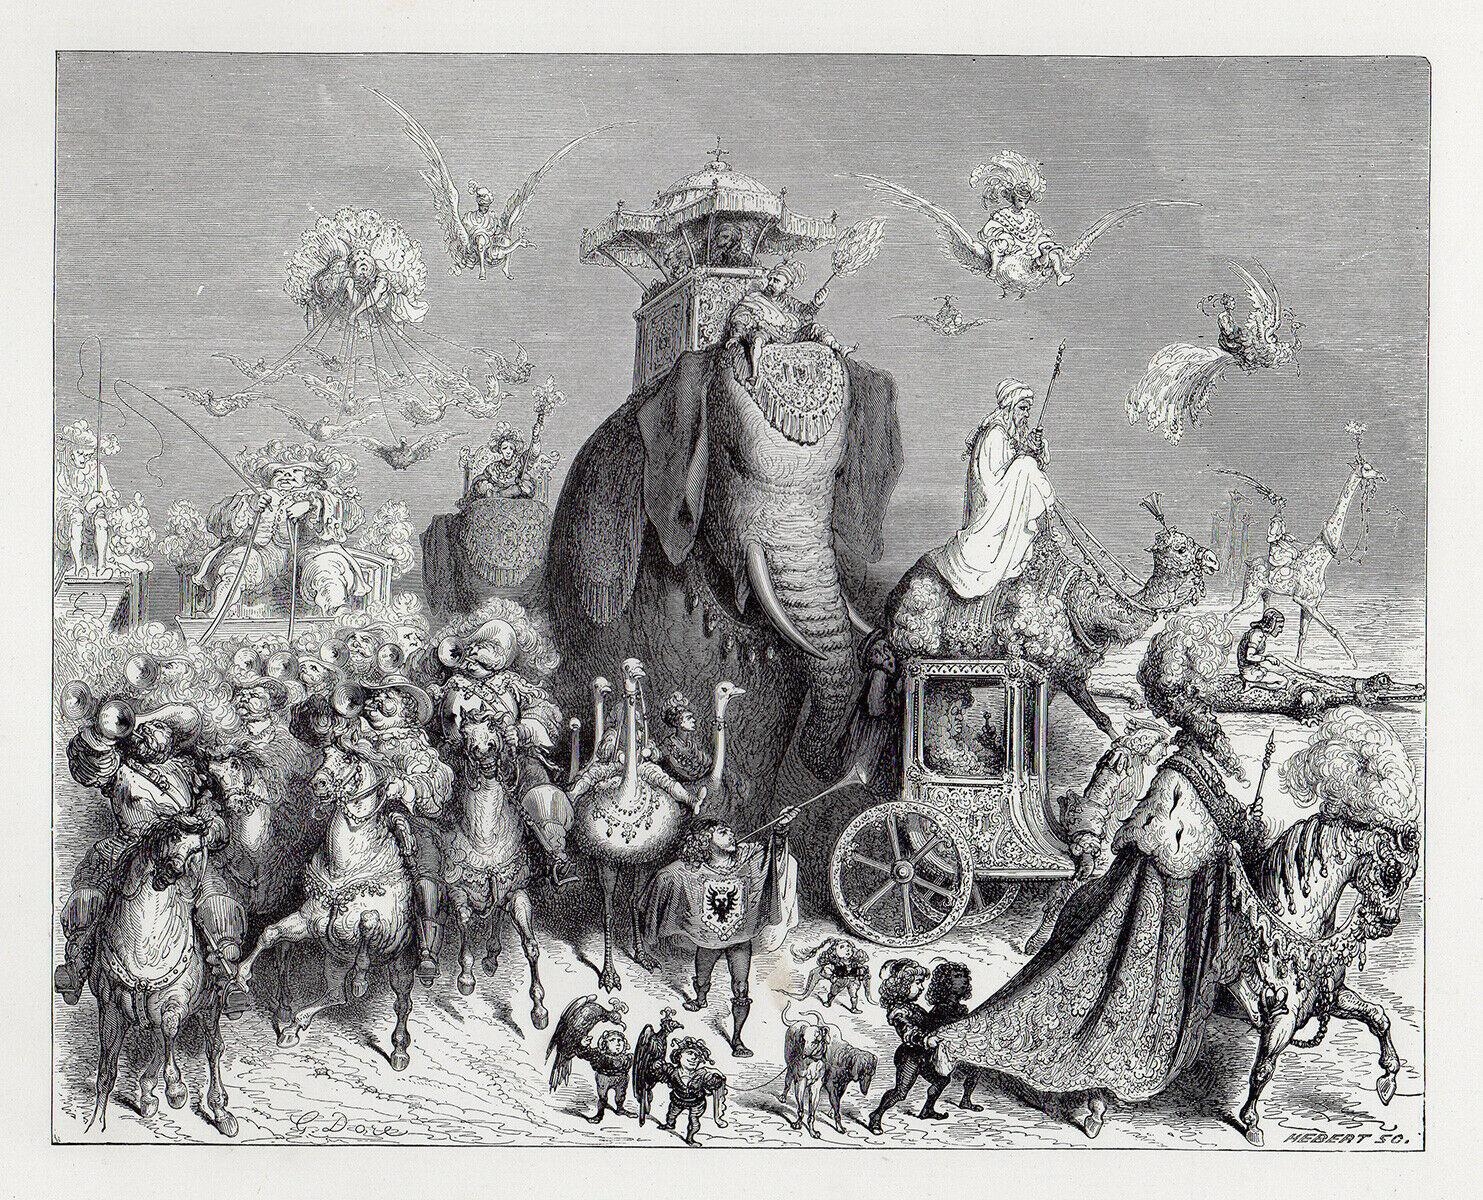 Donkeyskin VI - Gustave Doré